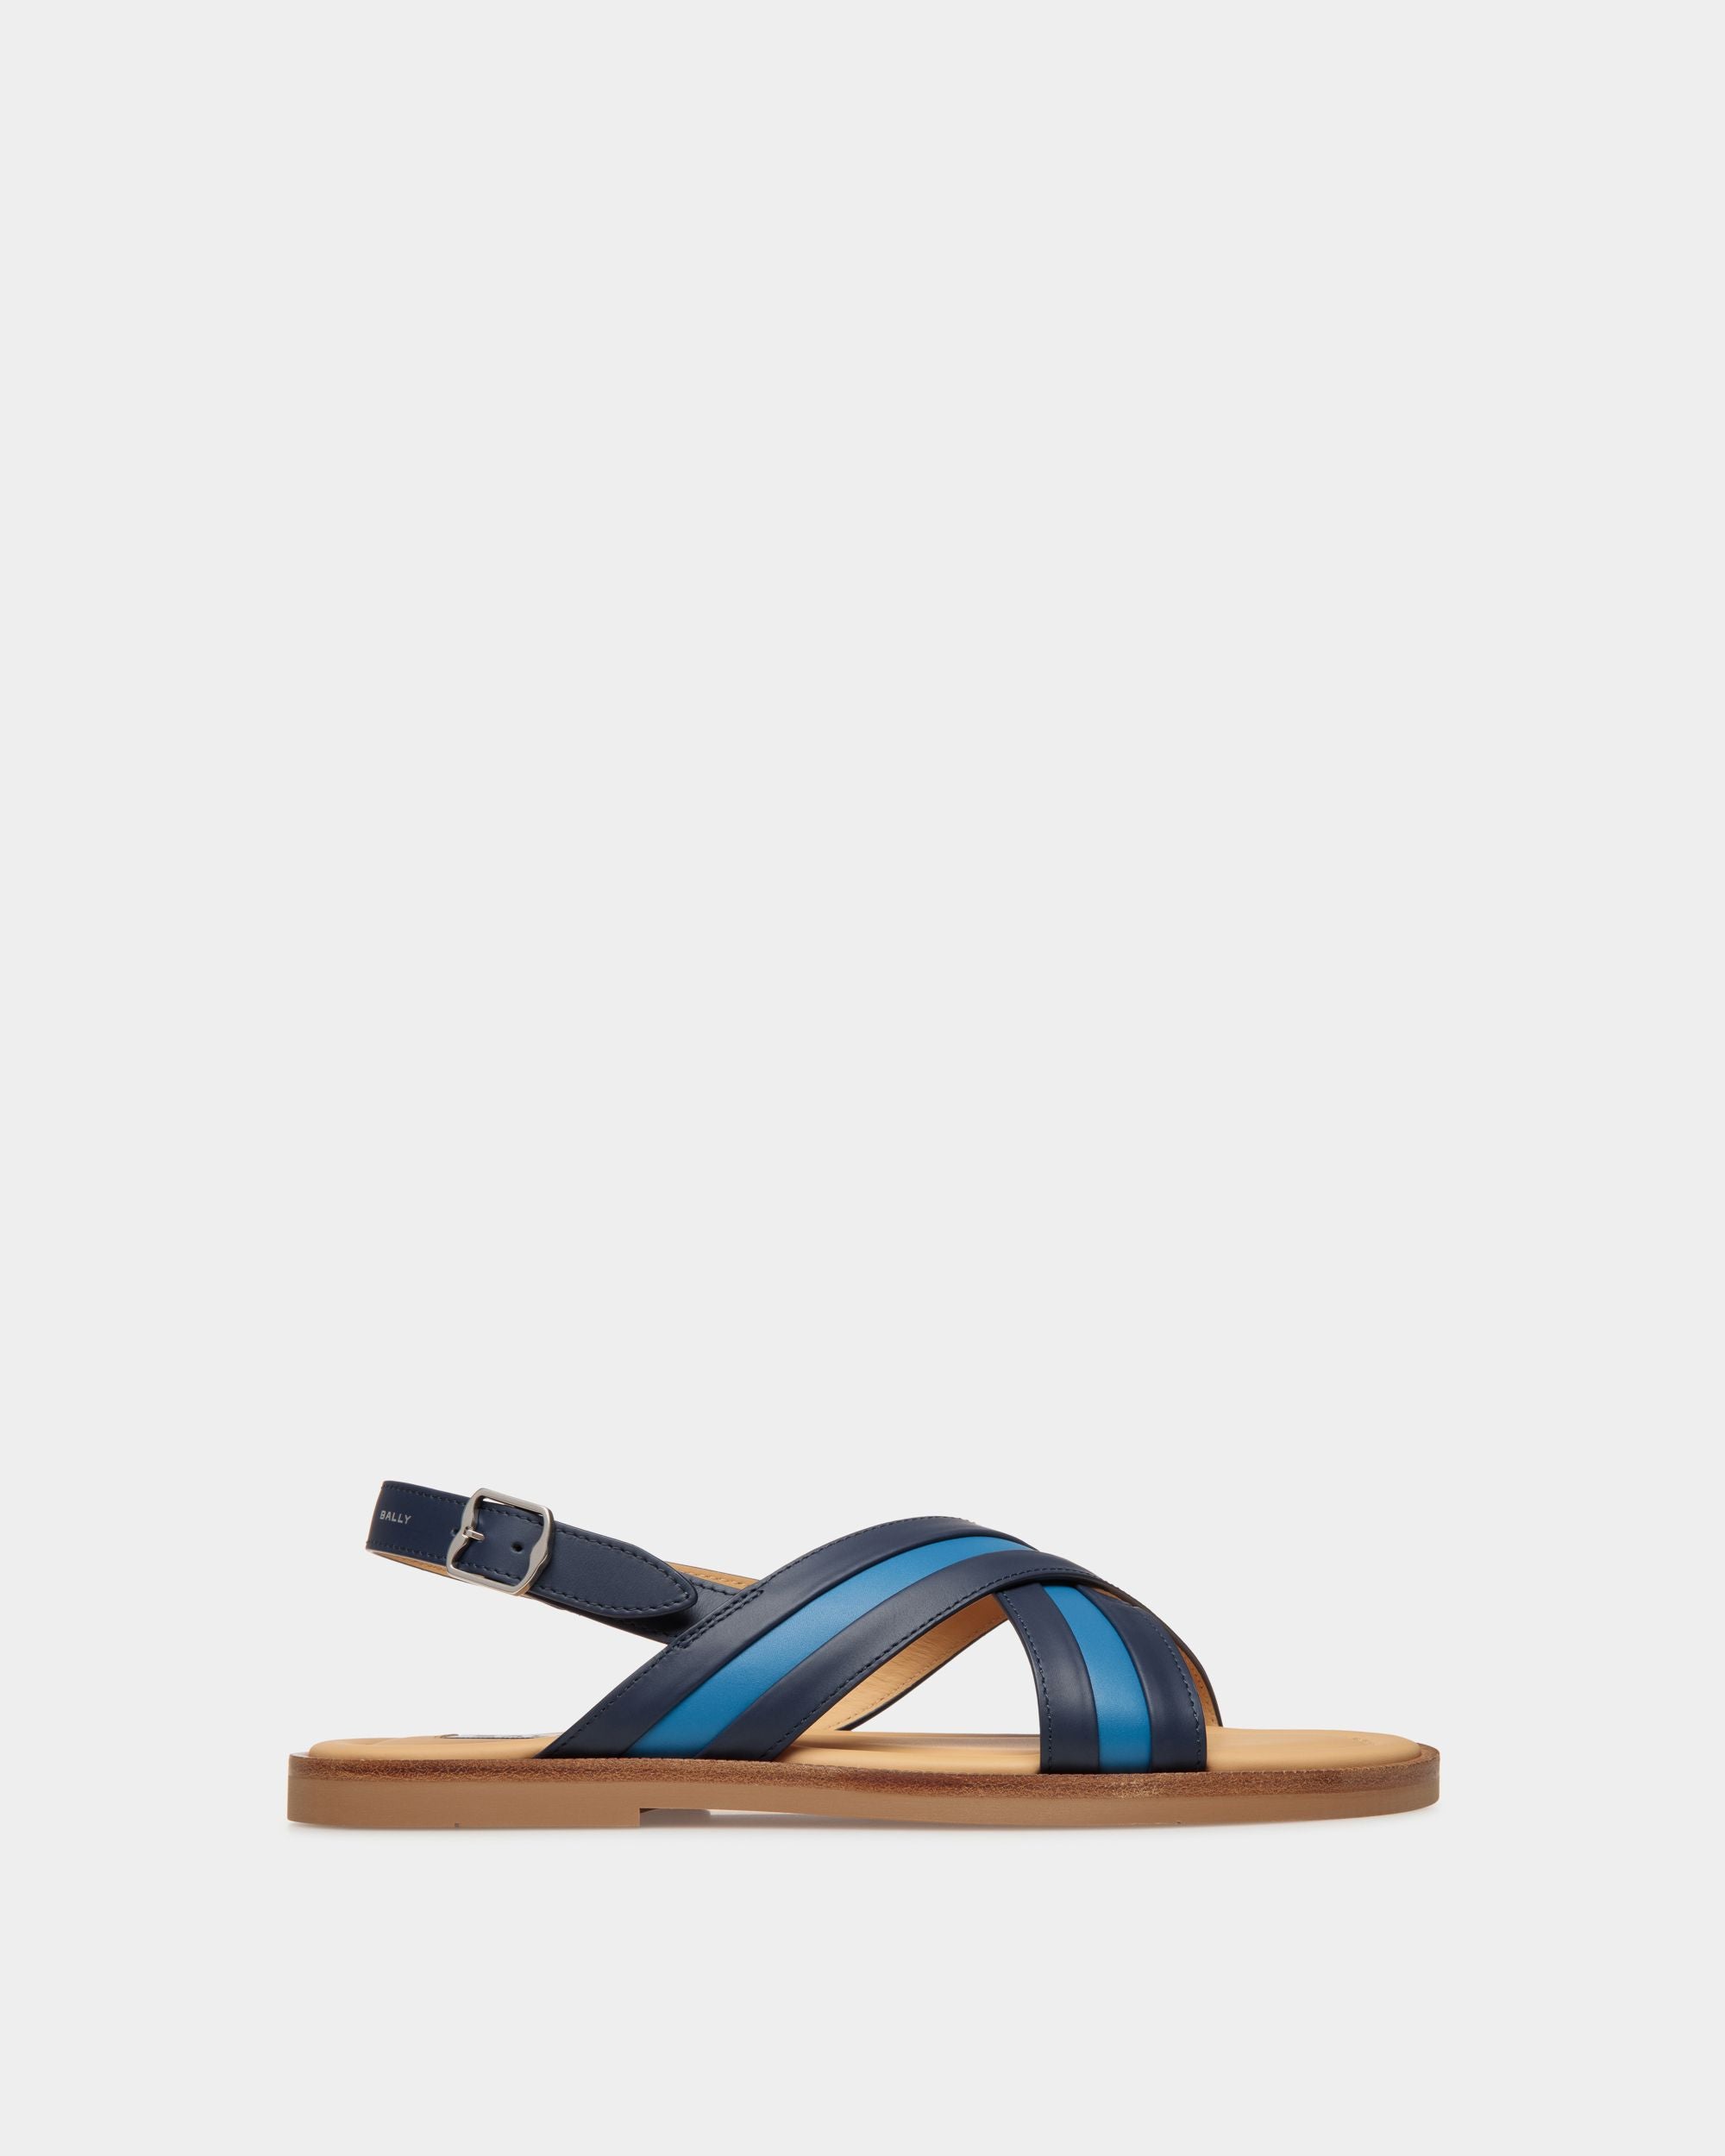 Glide | Sandale für Herren aus Leder in Blau | Bally | Still Life Seite